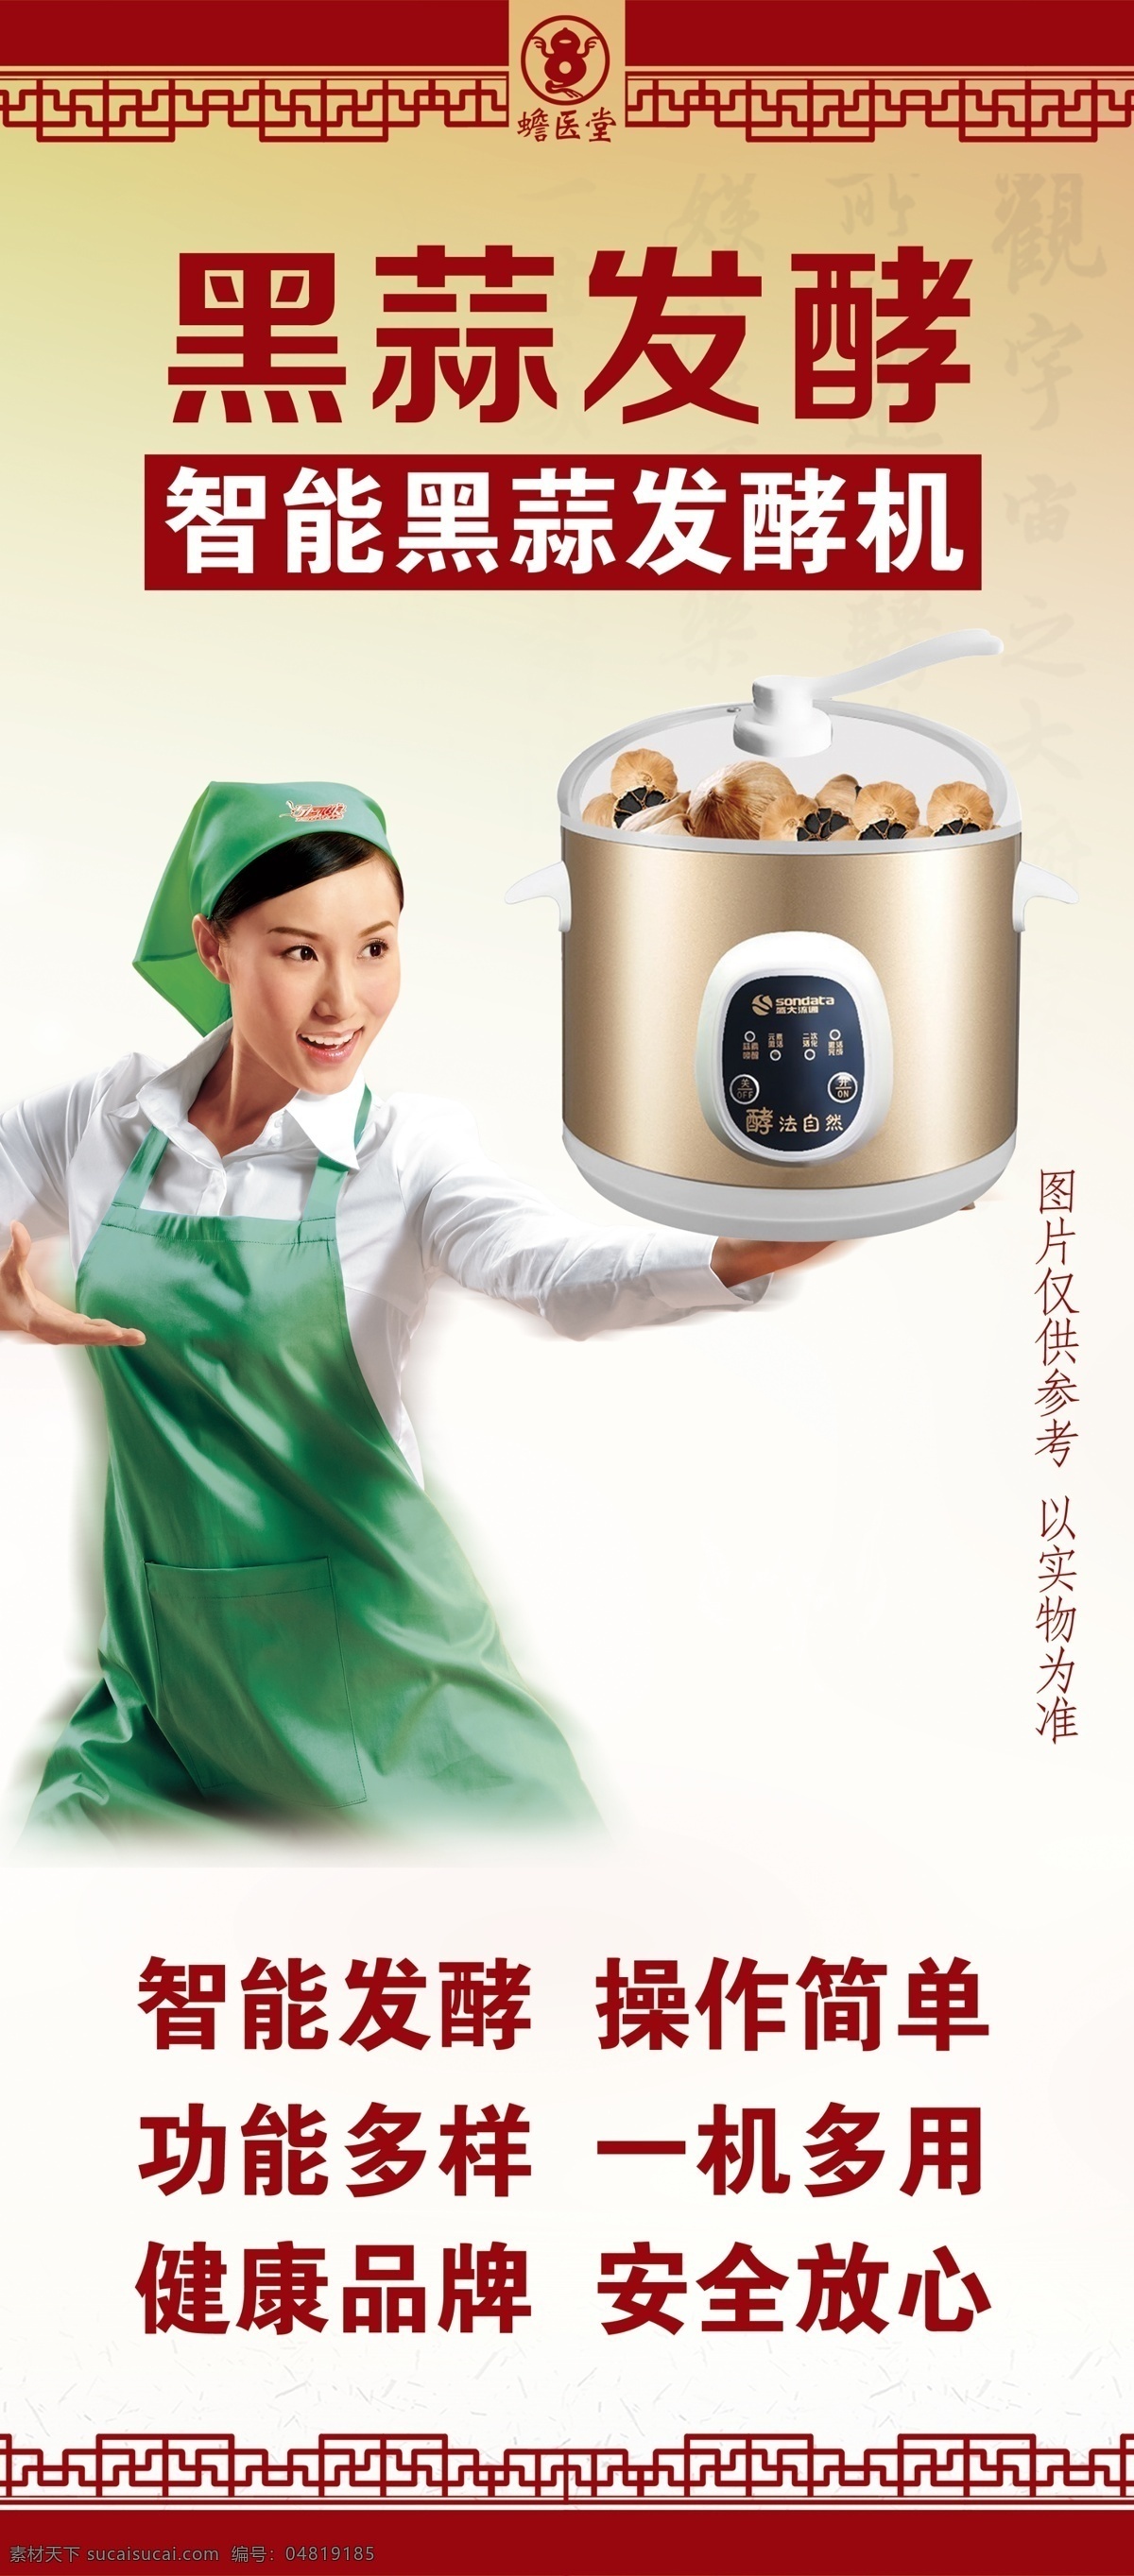 黑蒜发酵 黑蒜 发酵 发酵机 美女 厨房神器 一机多用 中国风 古典 设计文件